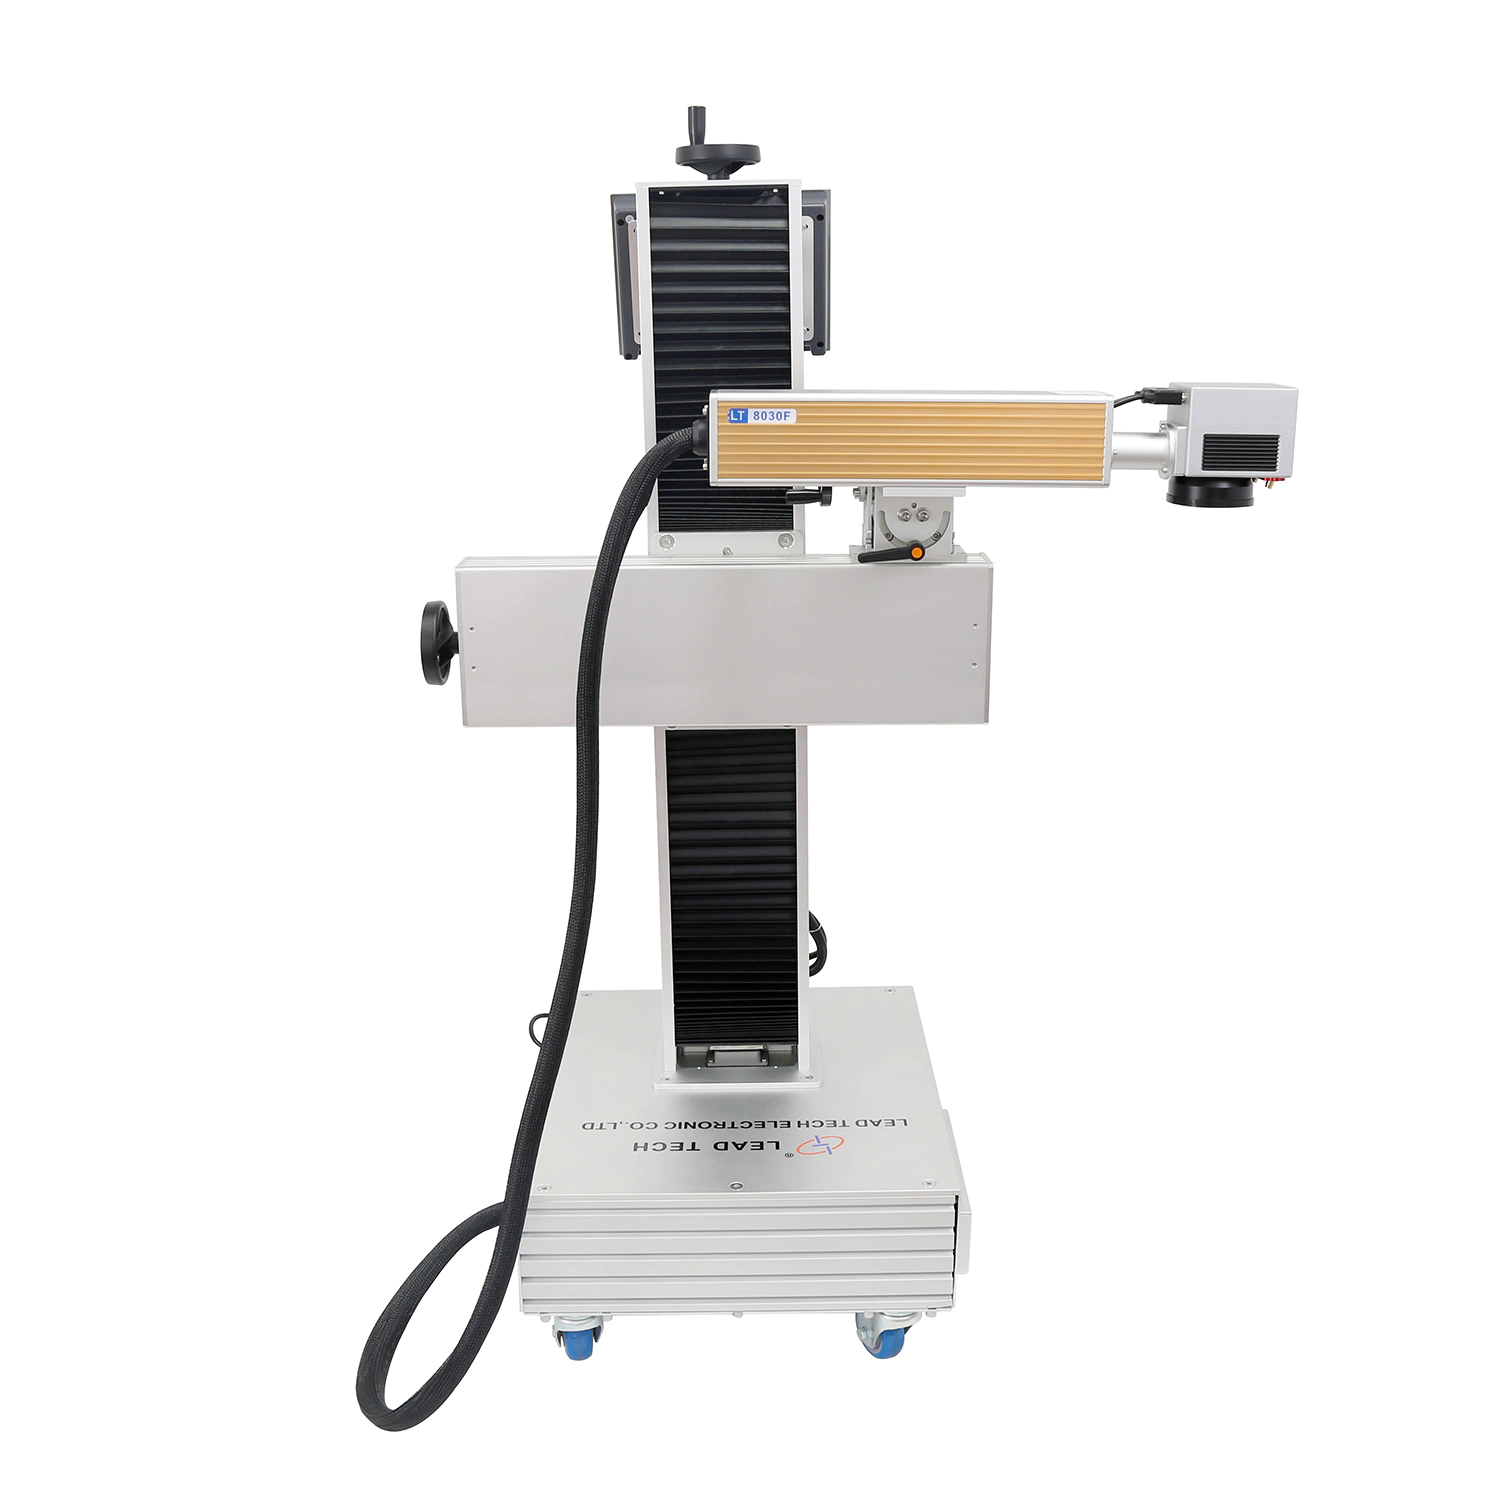 Lt8020f/Lt8030f/Lt8050f Hot Sale Split Type Fiber Laser Marking Machine Laser Printer for Metal